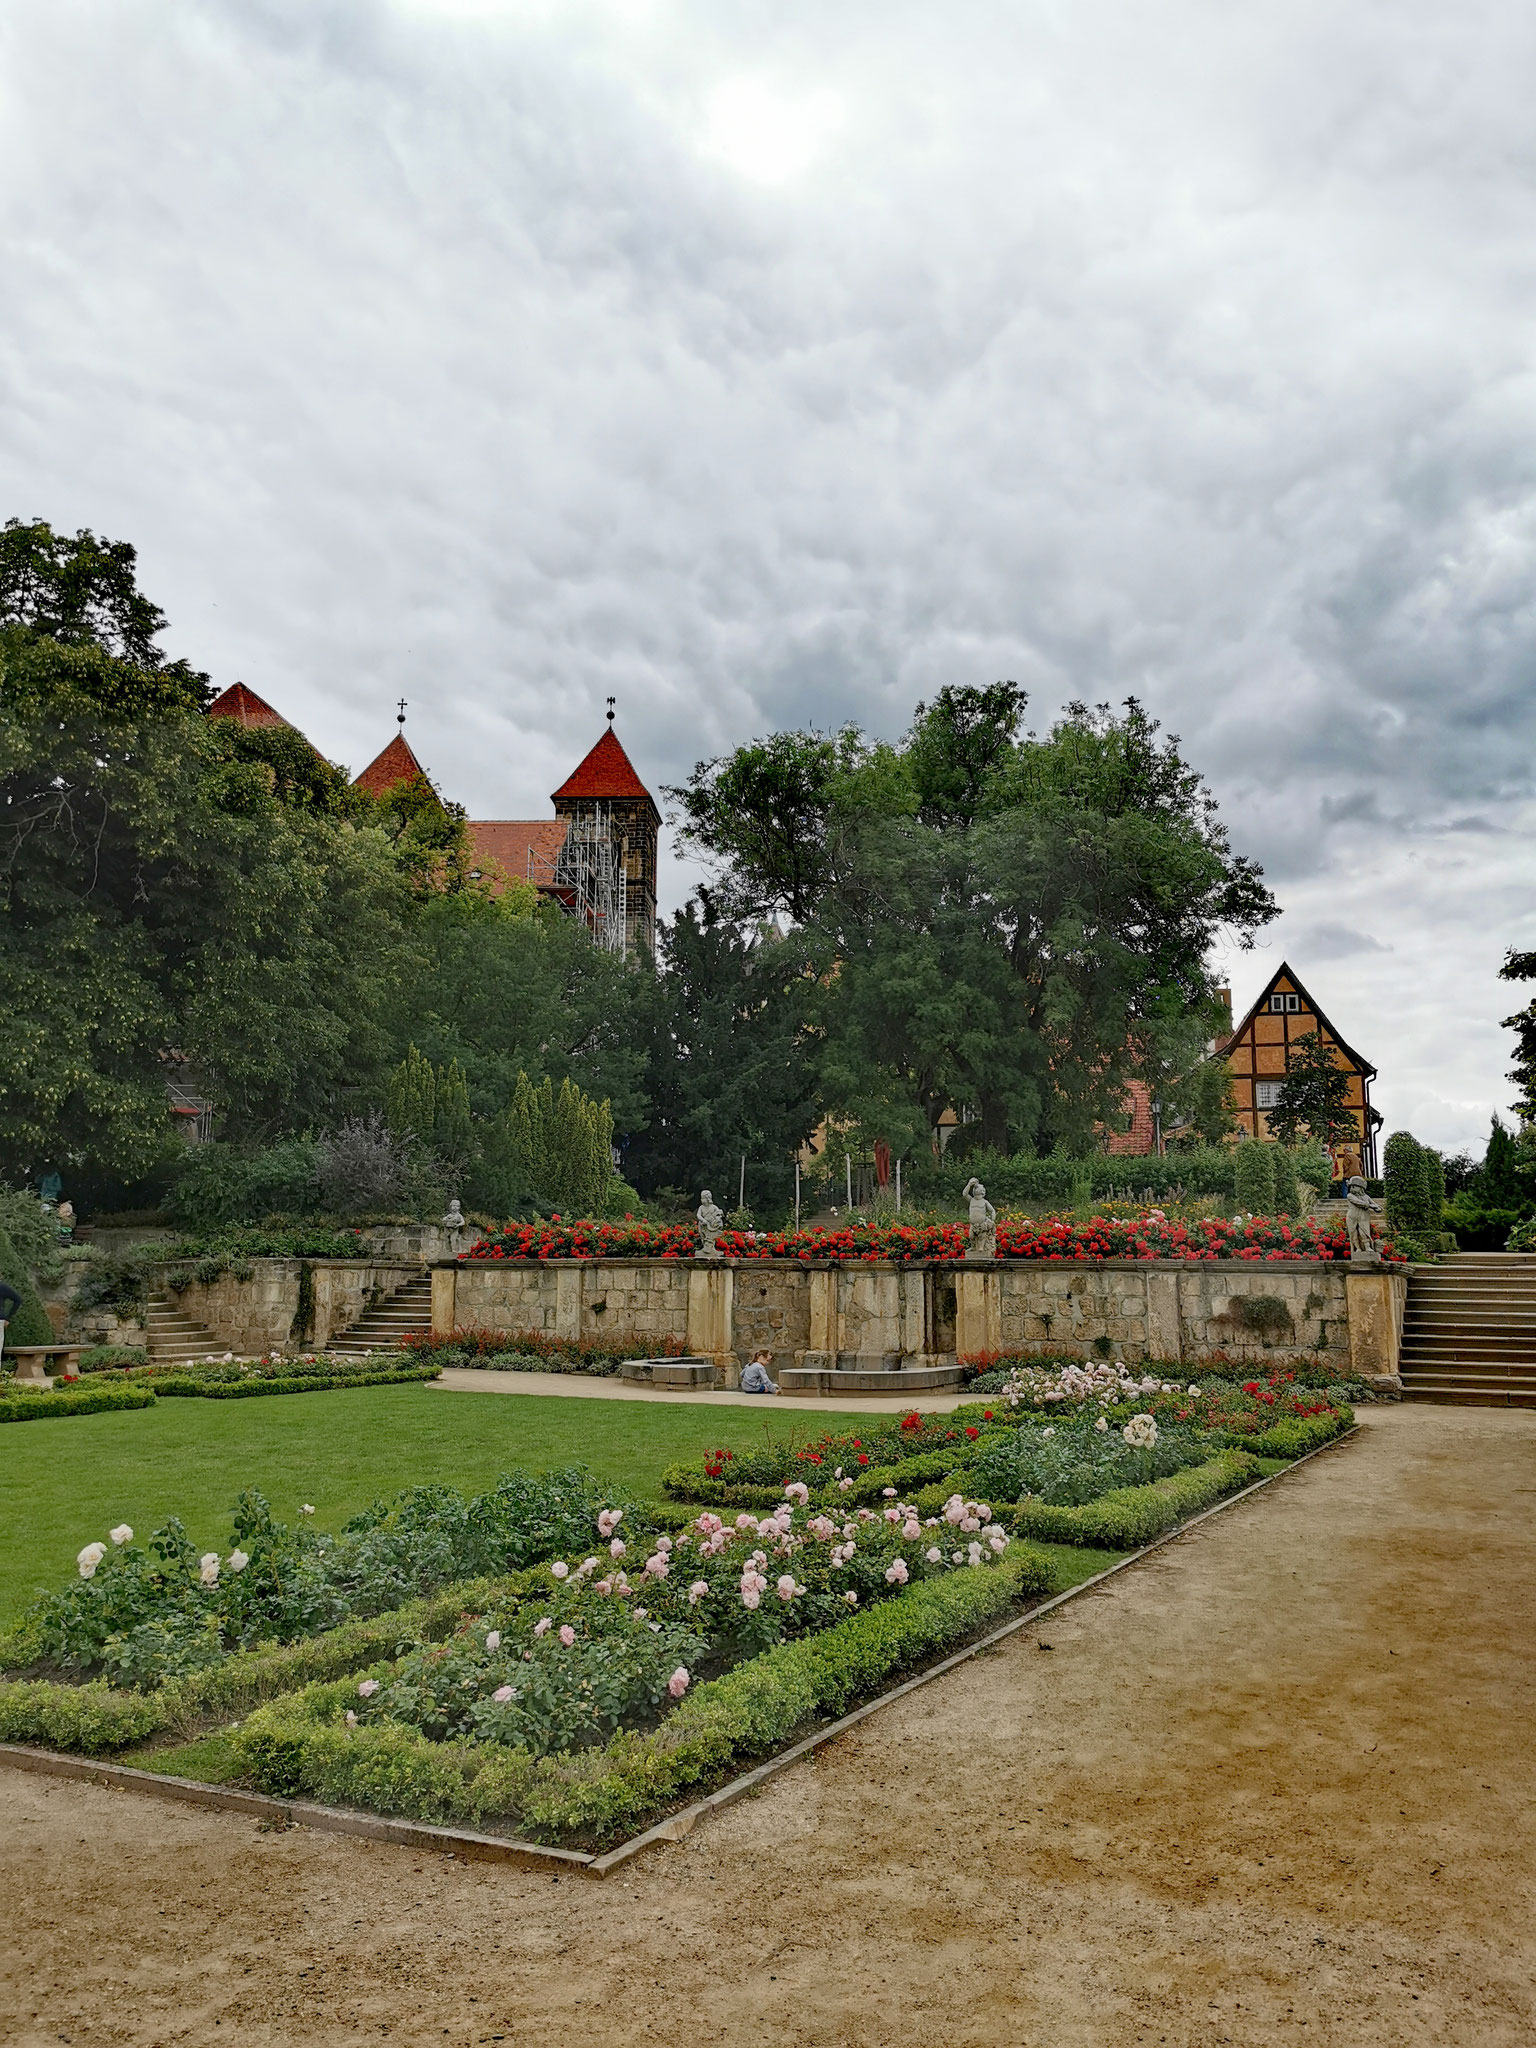 Schlossgarten- Schloss Quedlinburg 